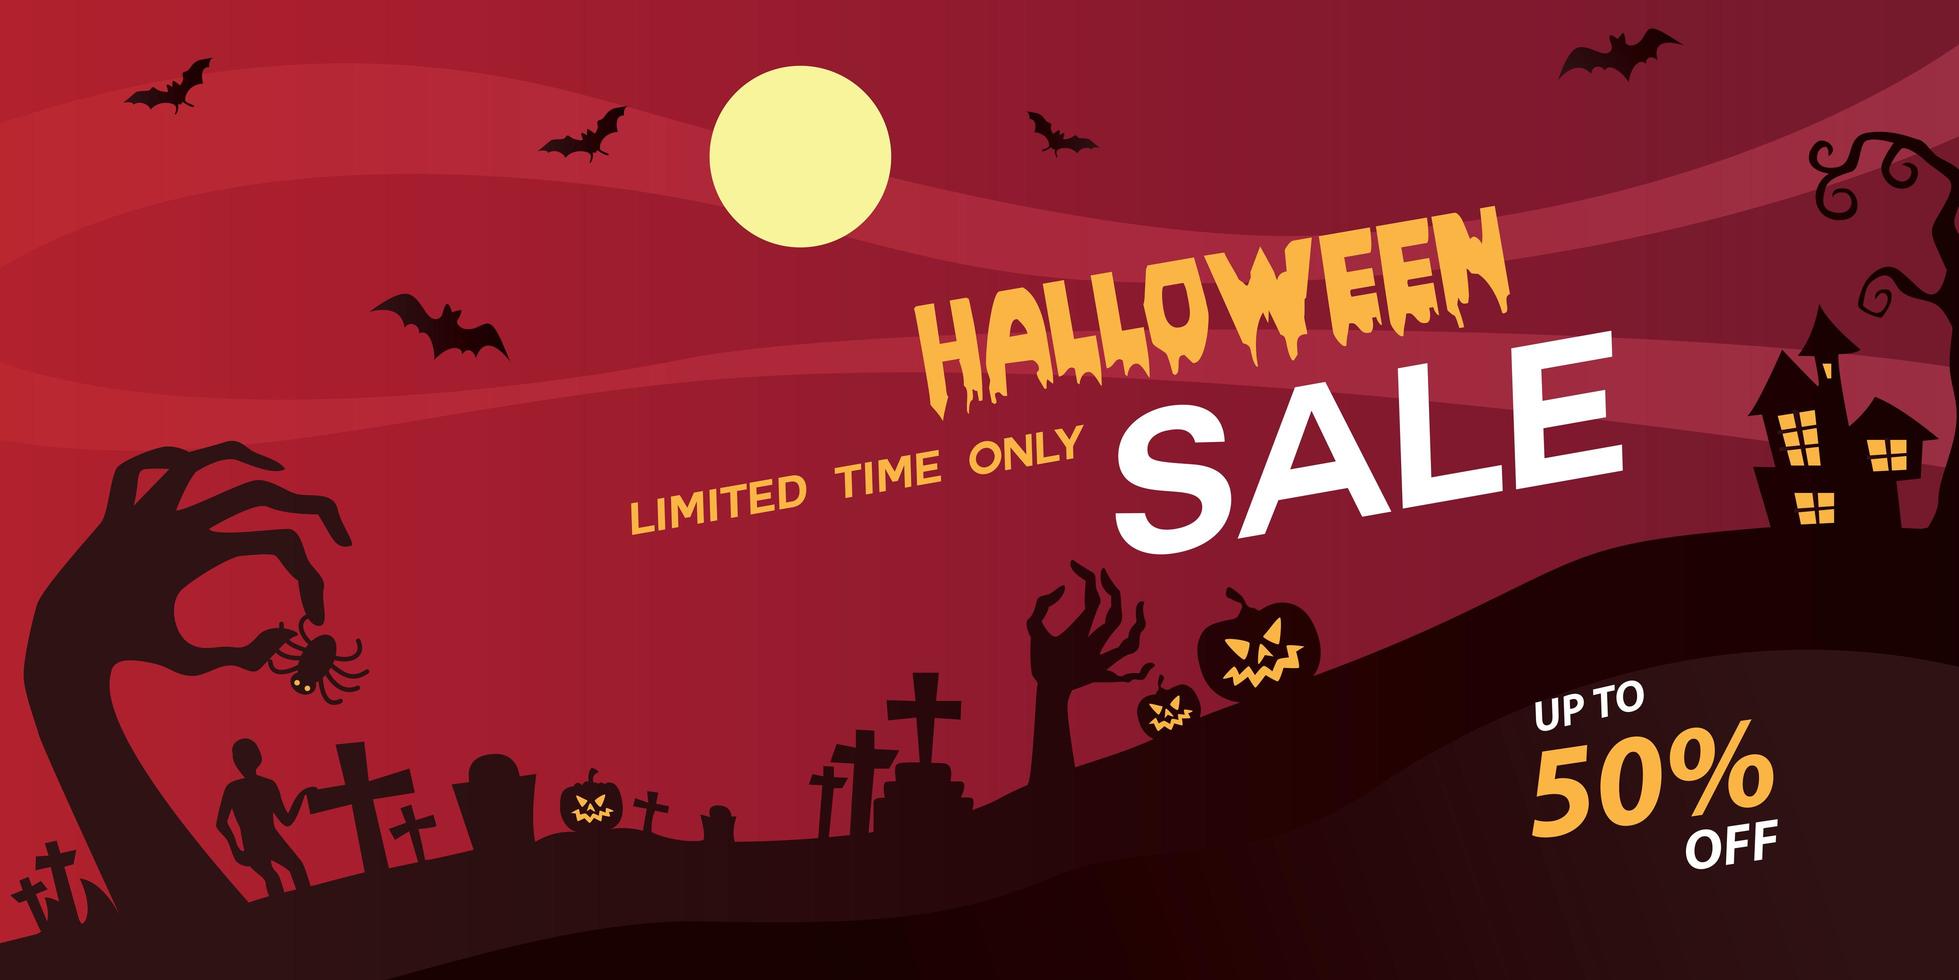 banner de halloween à venda com 50% de desconto. vetor